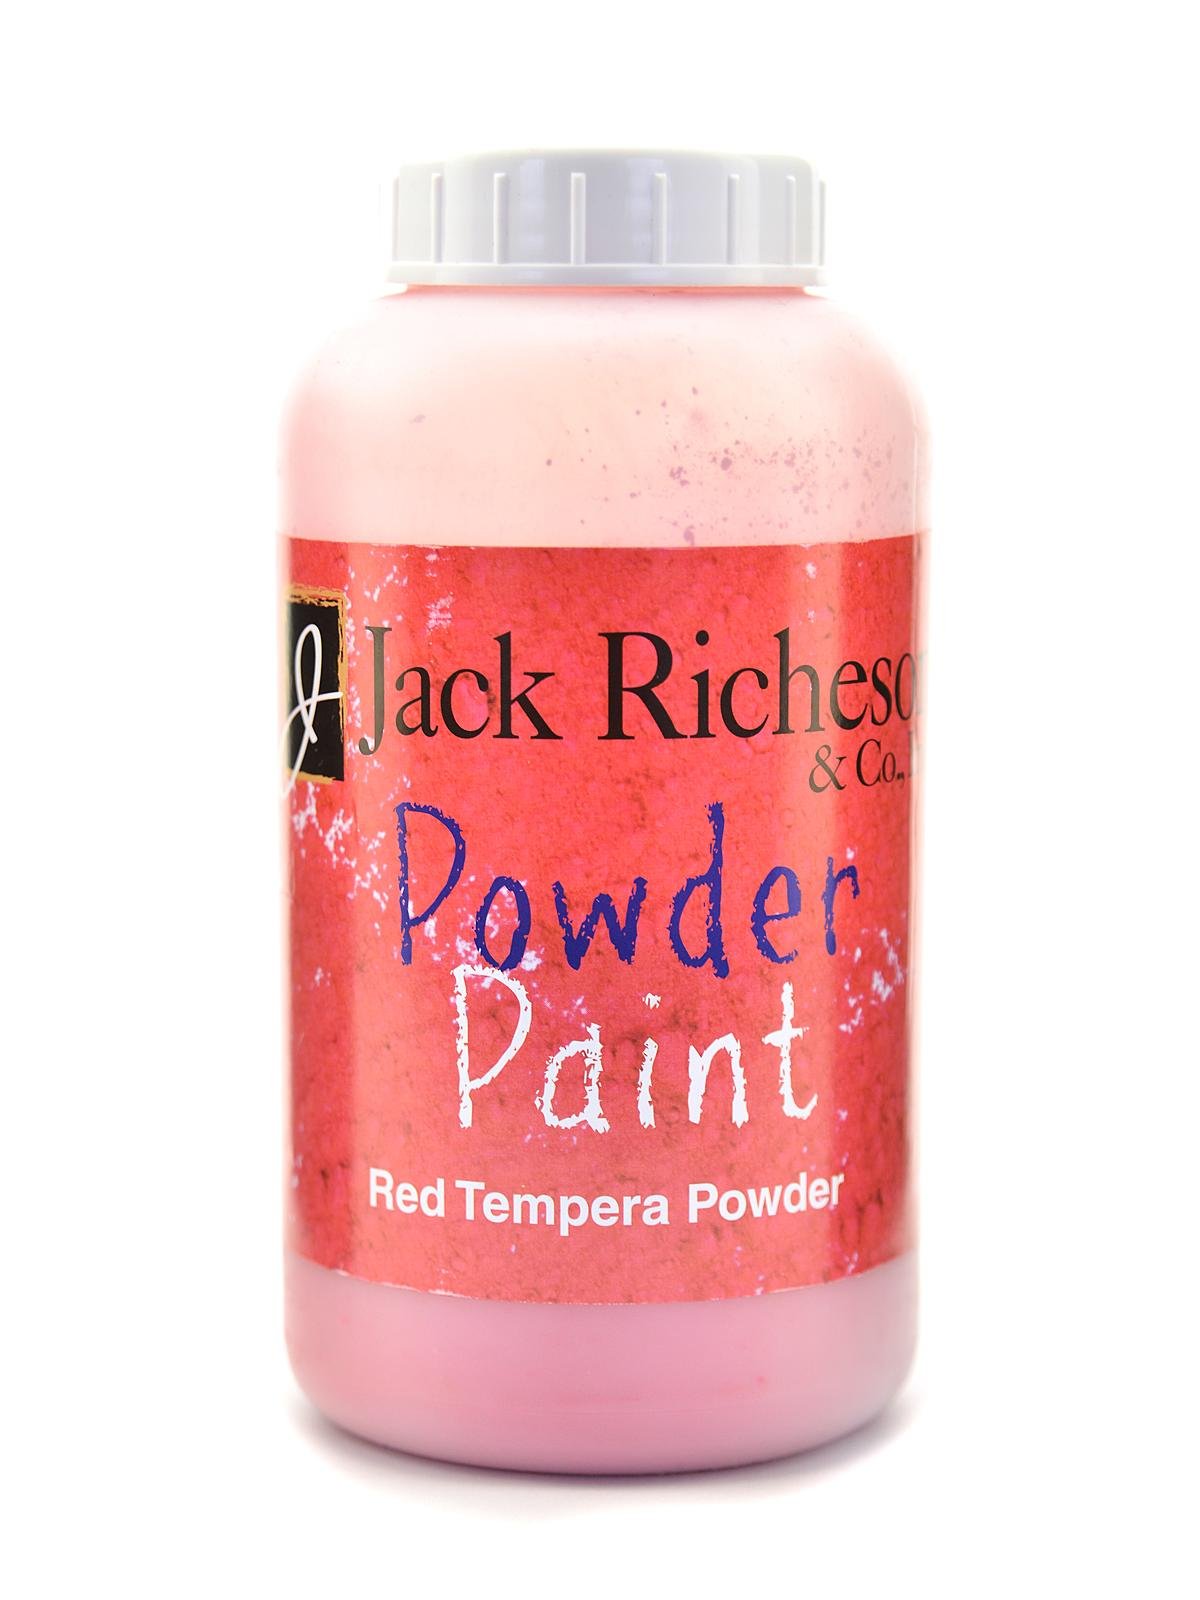 Powder Paint – Jack Richeson & Co.